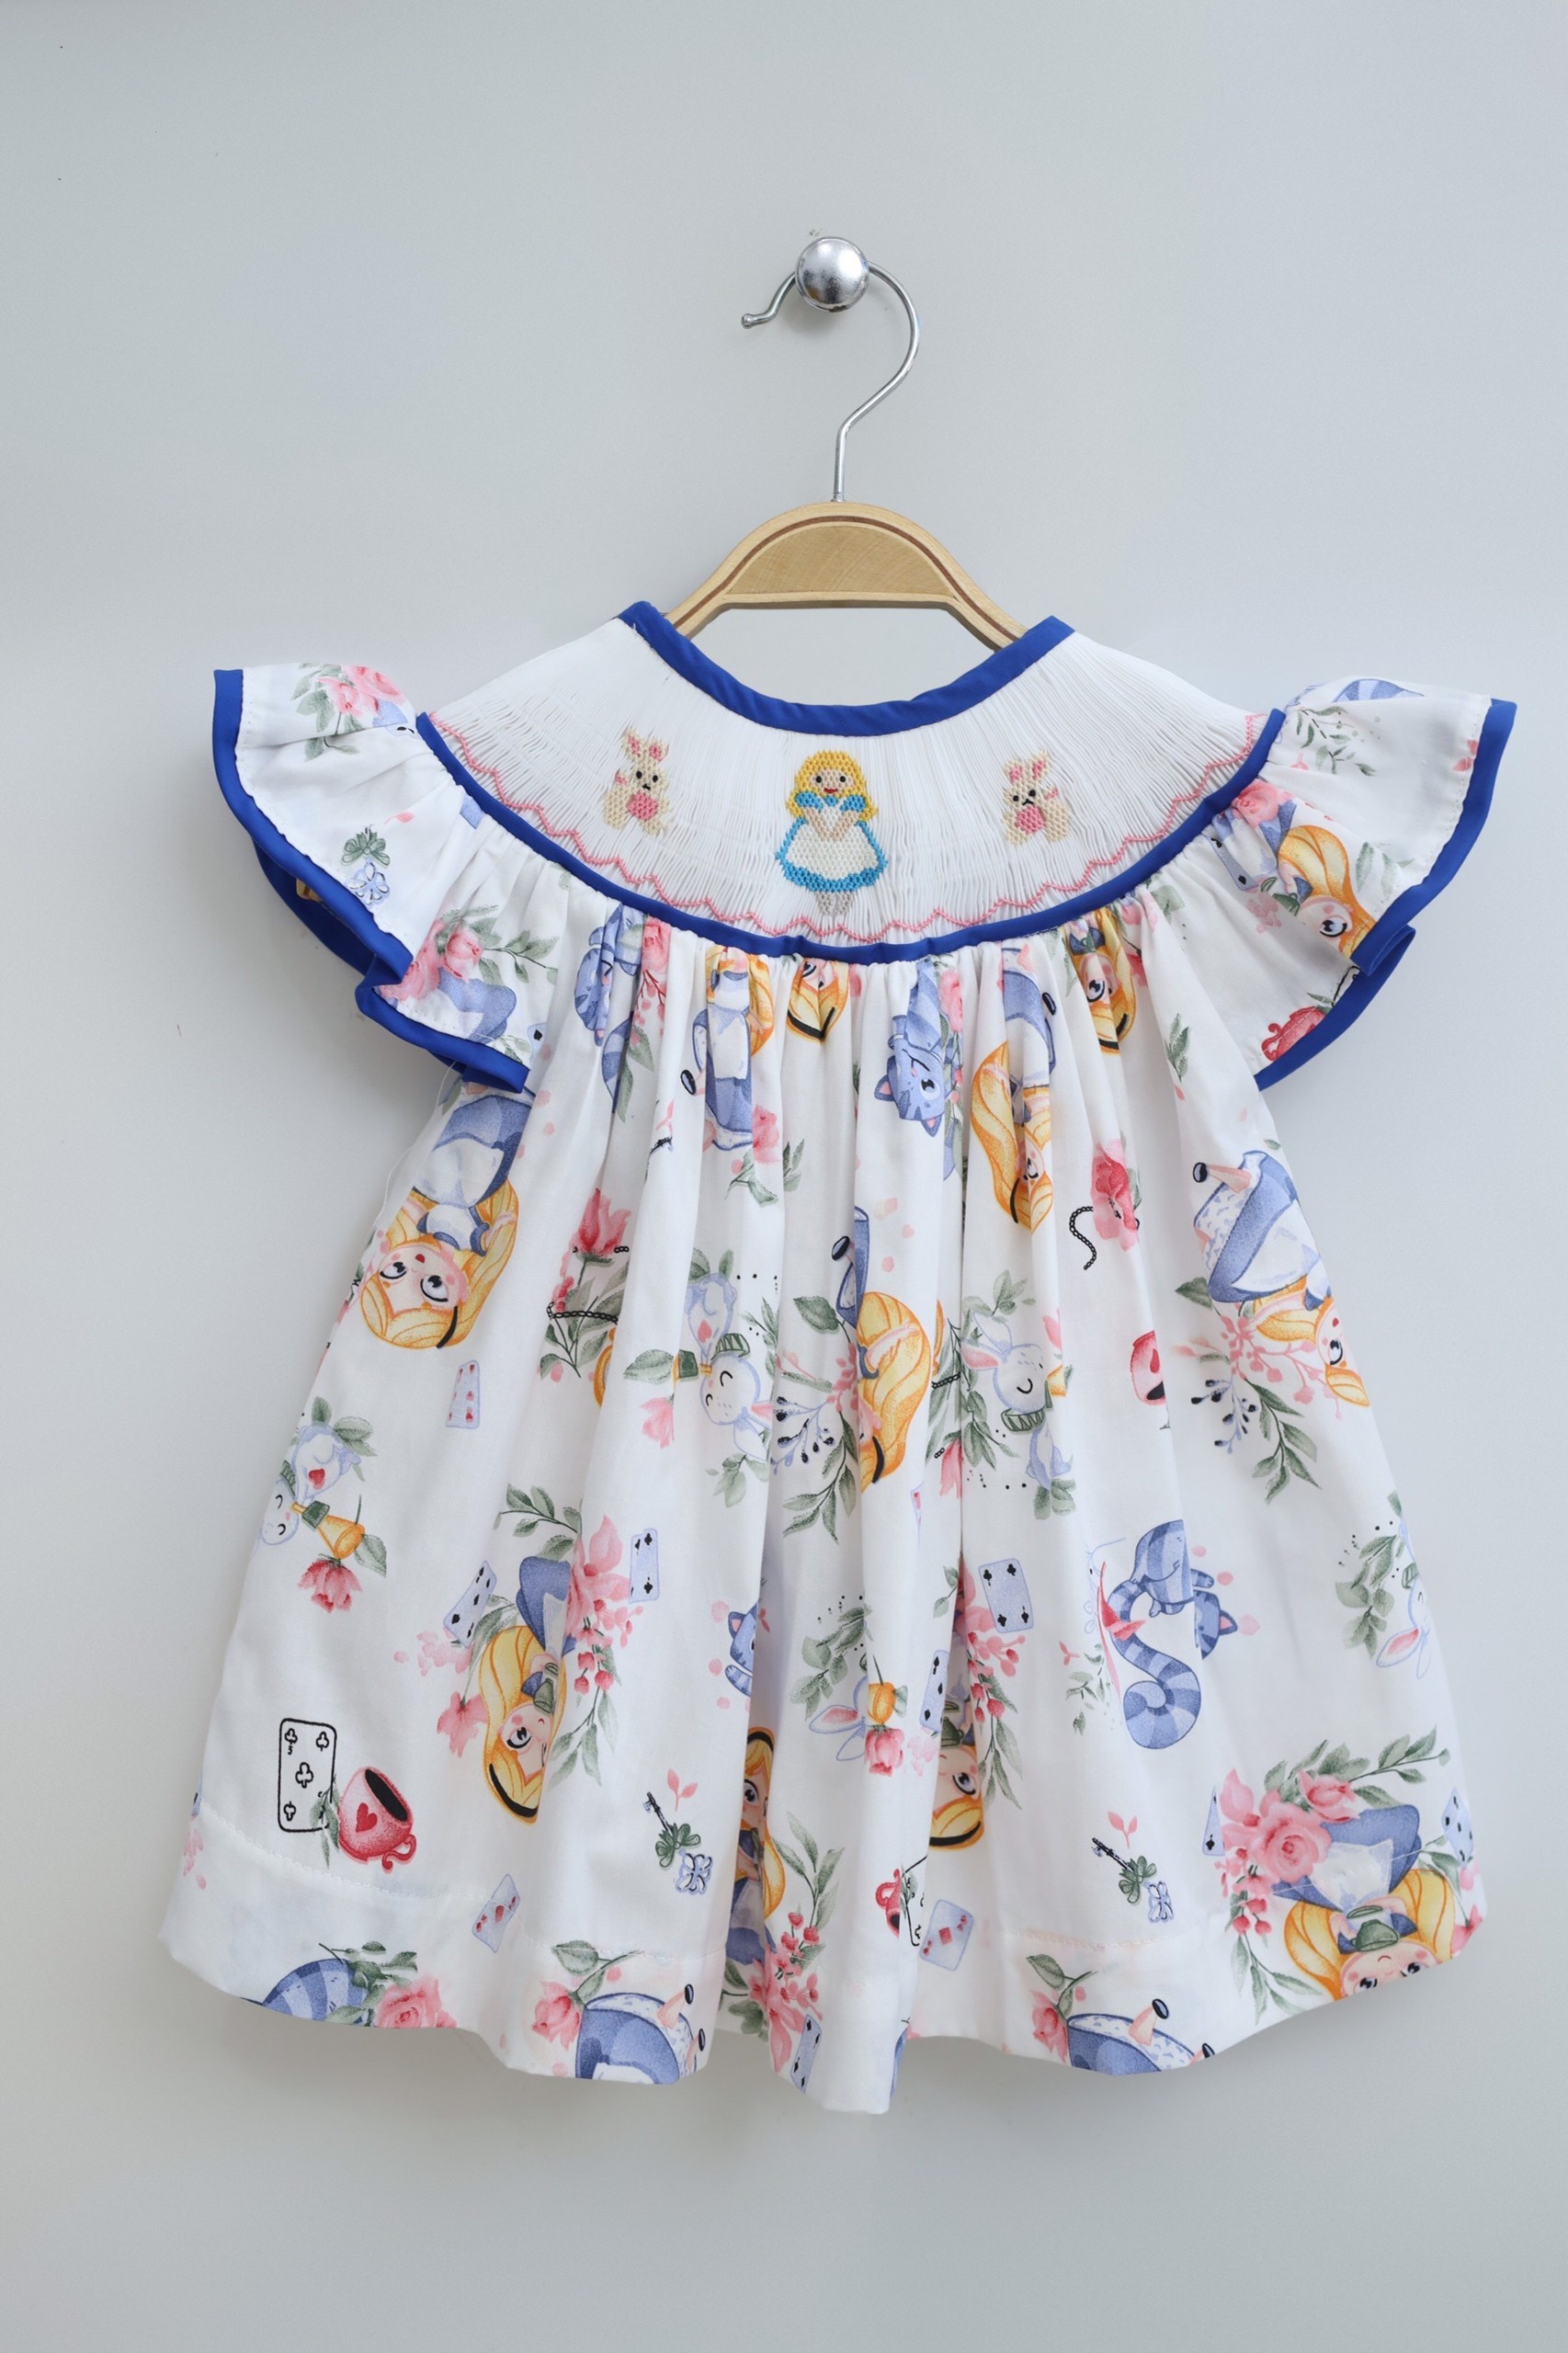 Baby Animal Print Summer Dress For Girl